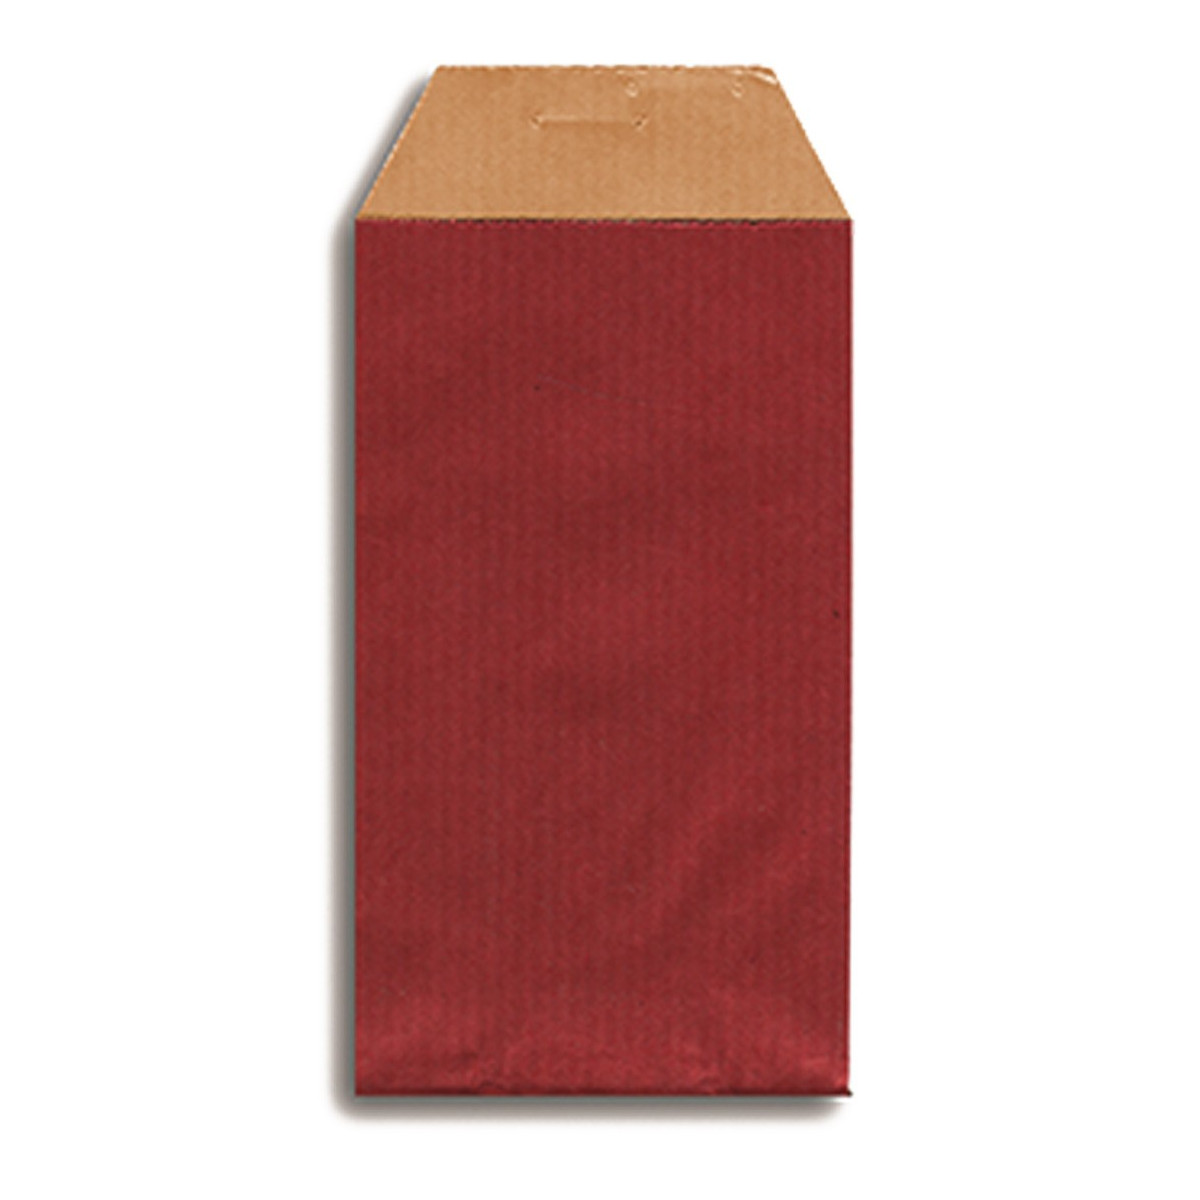 Envelope kraft vermelho